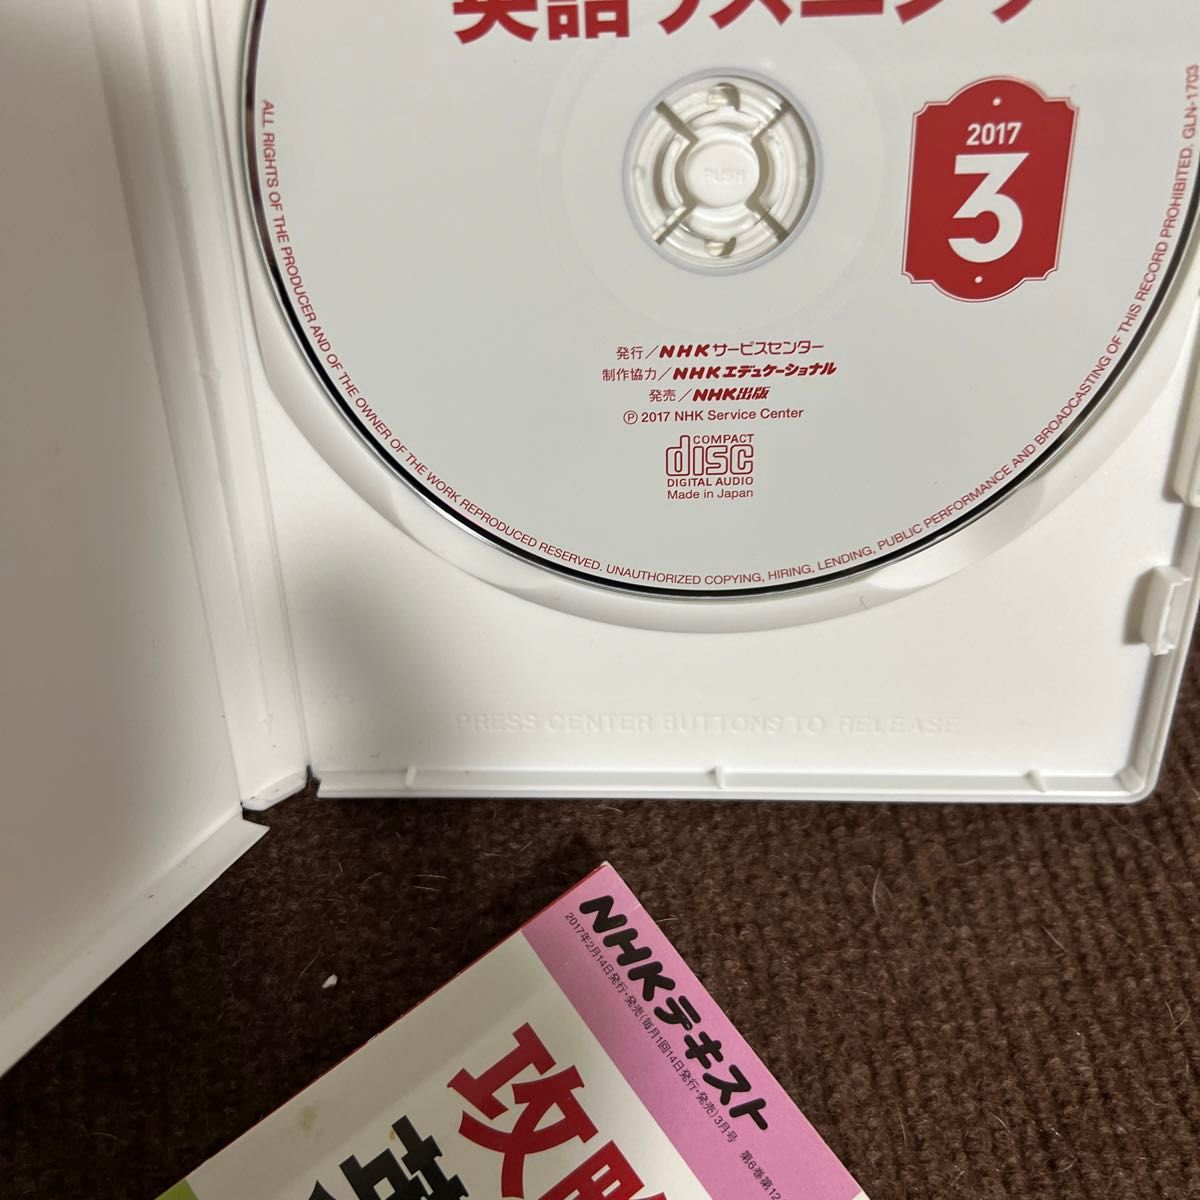 テキスト音声CDあり①本/NHKラジオテキスト攻略! 英語リスニング②CD  中古